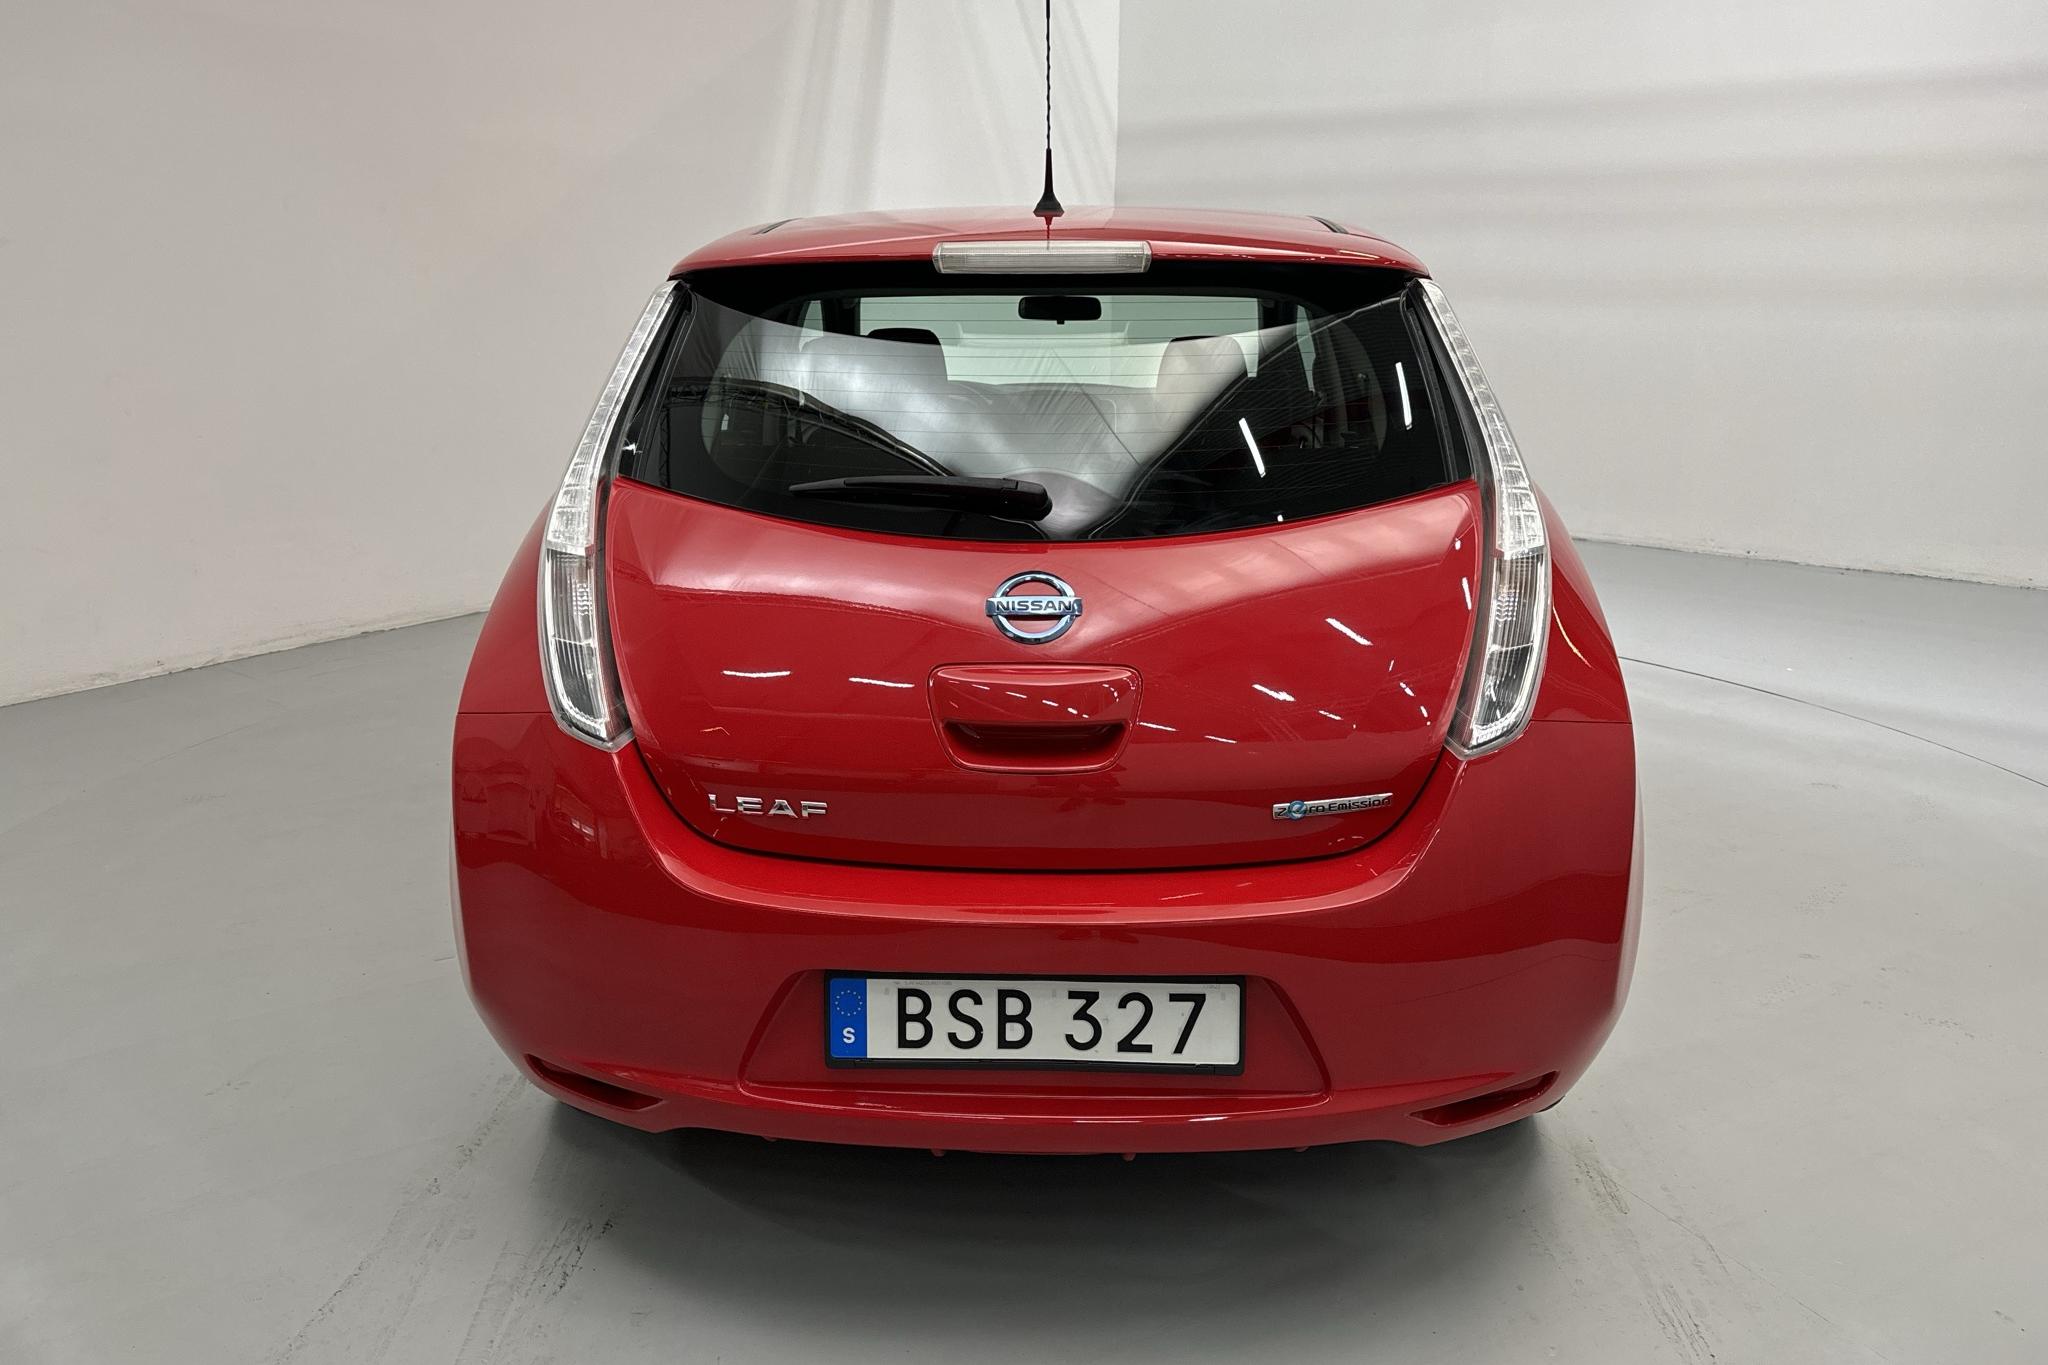 Nissan LEAF 5dr (109hk) - 13 560 km - Automatyczna - czerwony - 2017